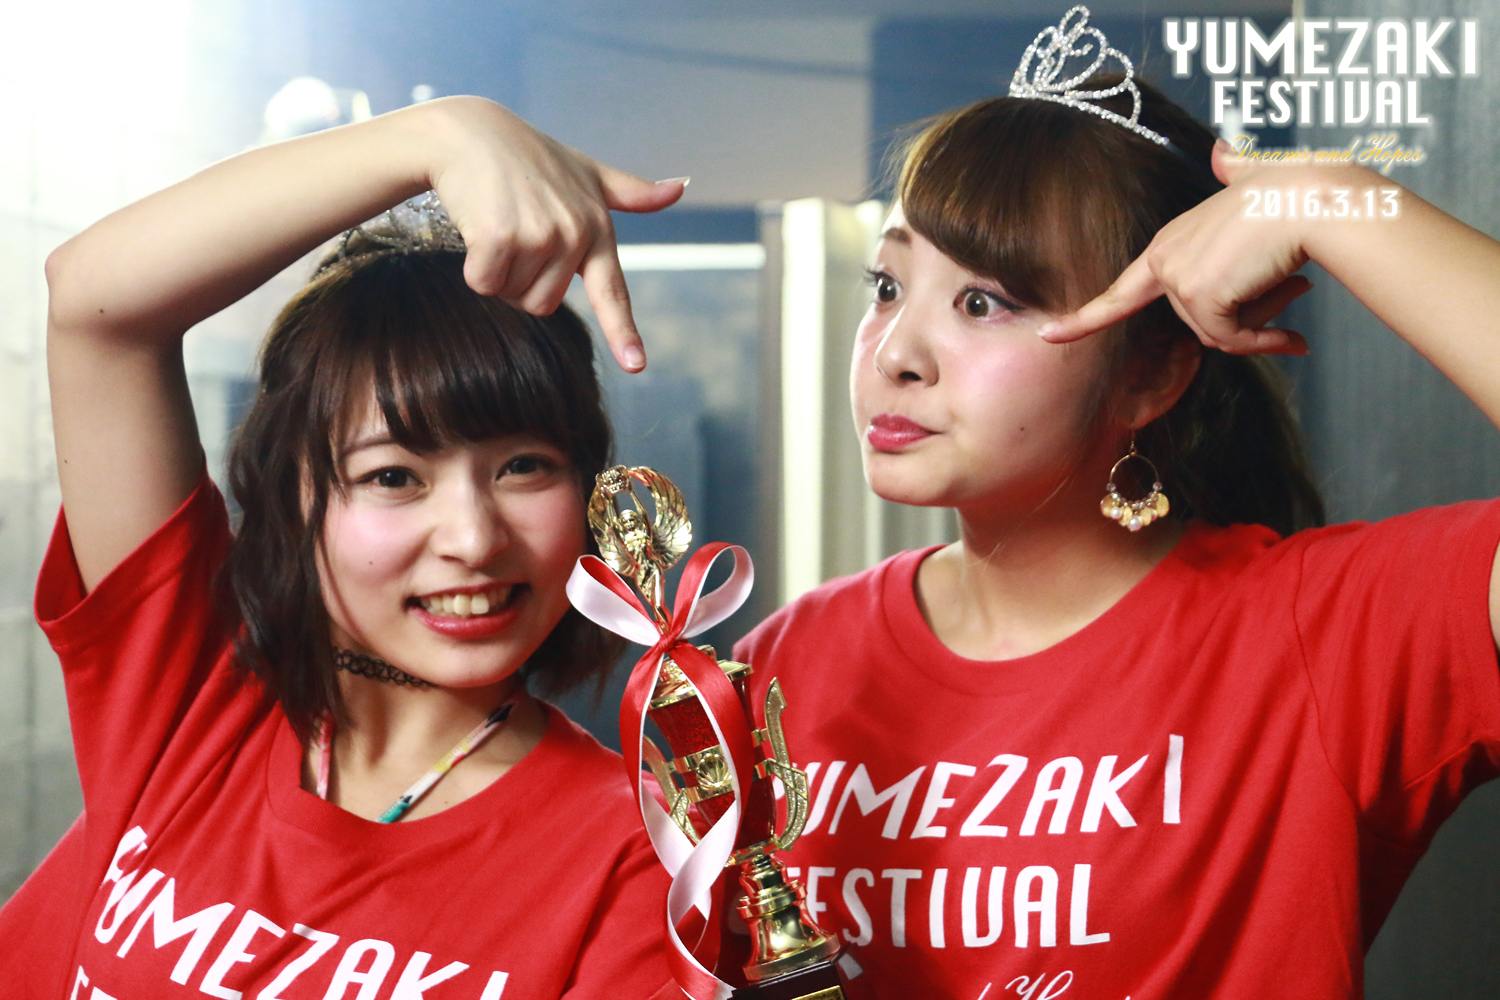 YUMEZAKI FESTIVAL